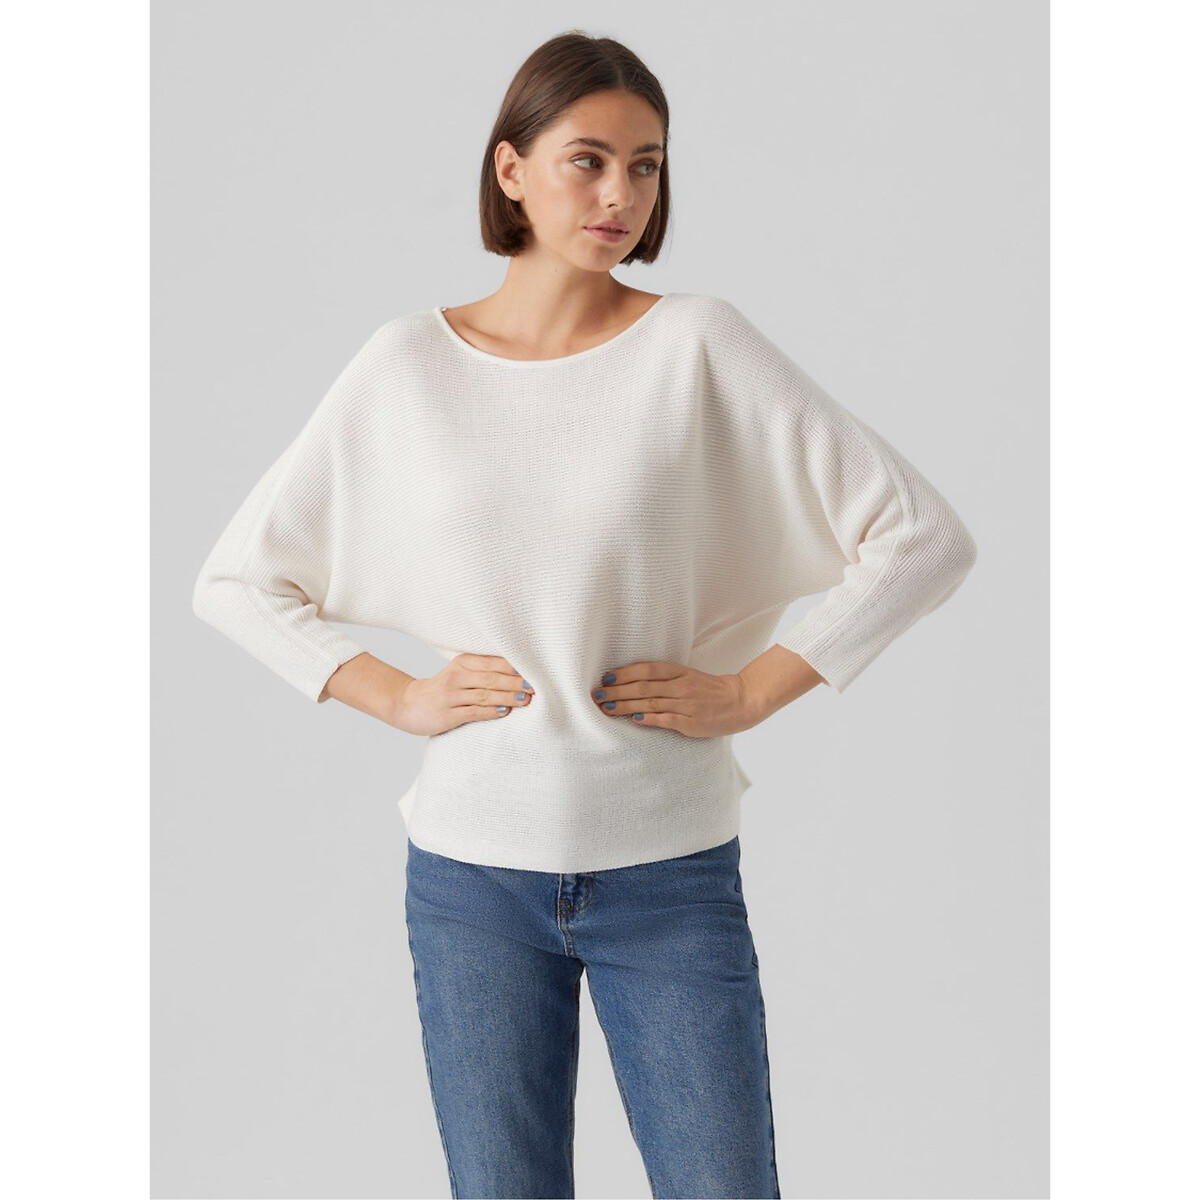 Пуловер из рифленого трикотажа M белый пуловер с v образным вырезом из рифленого трикотажа m бежевый